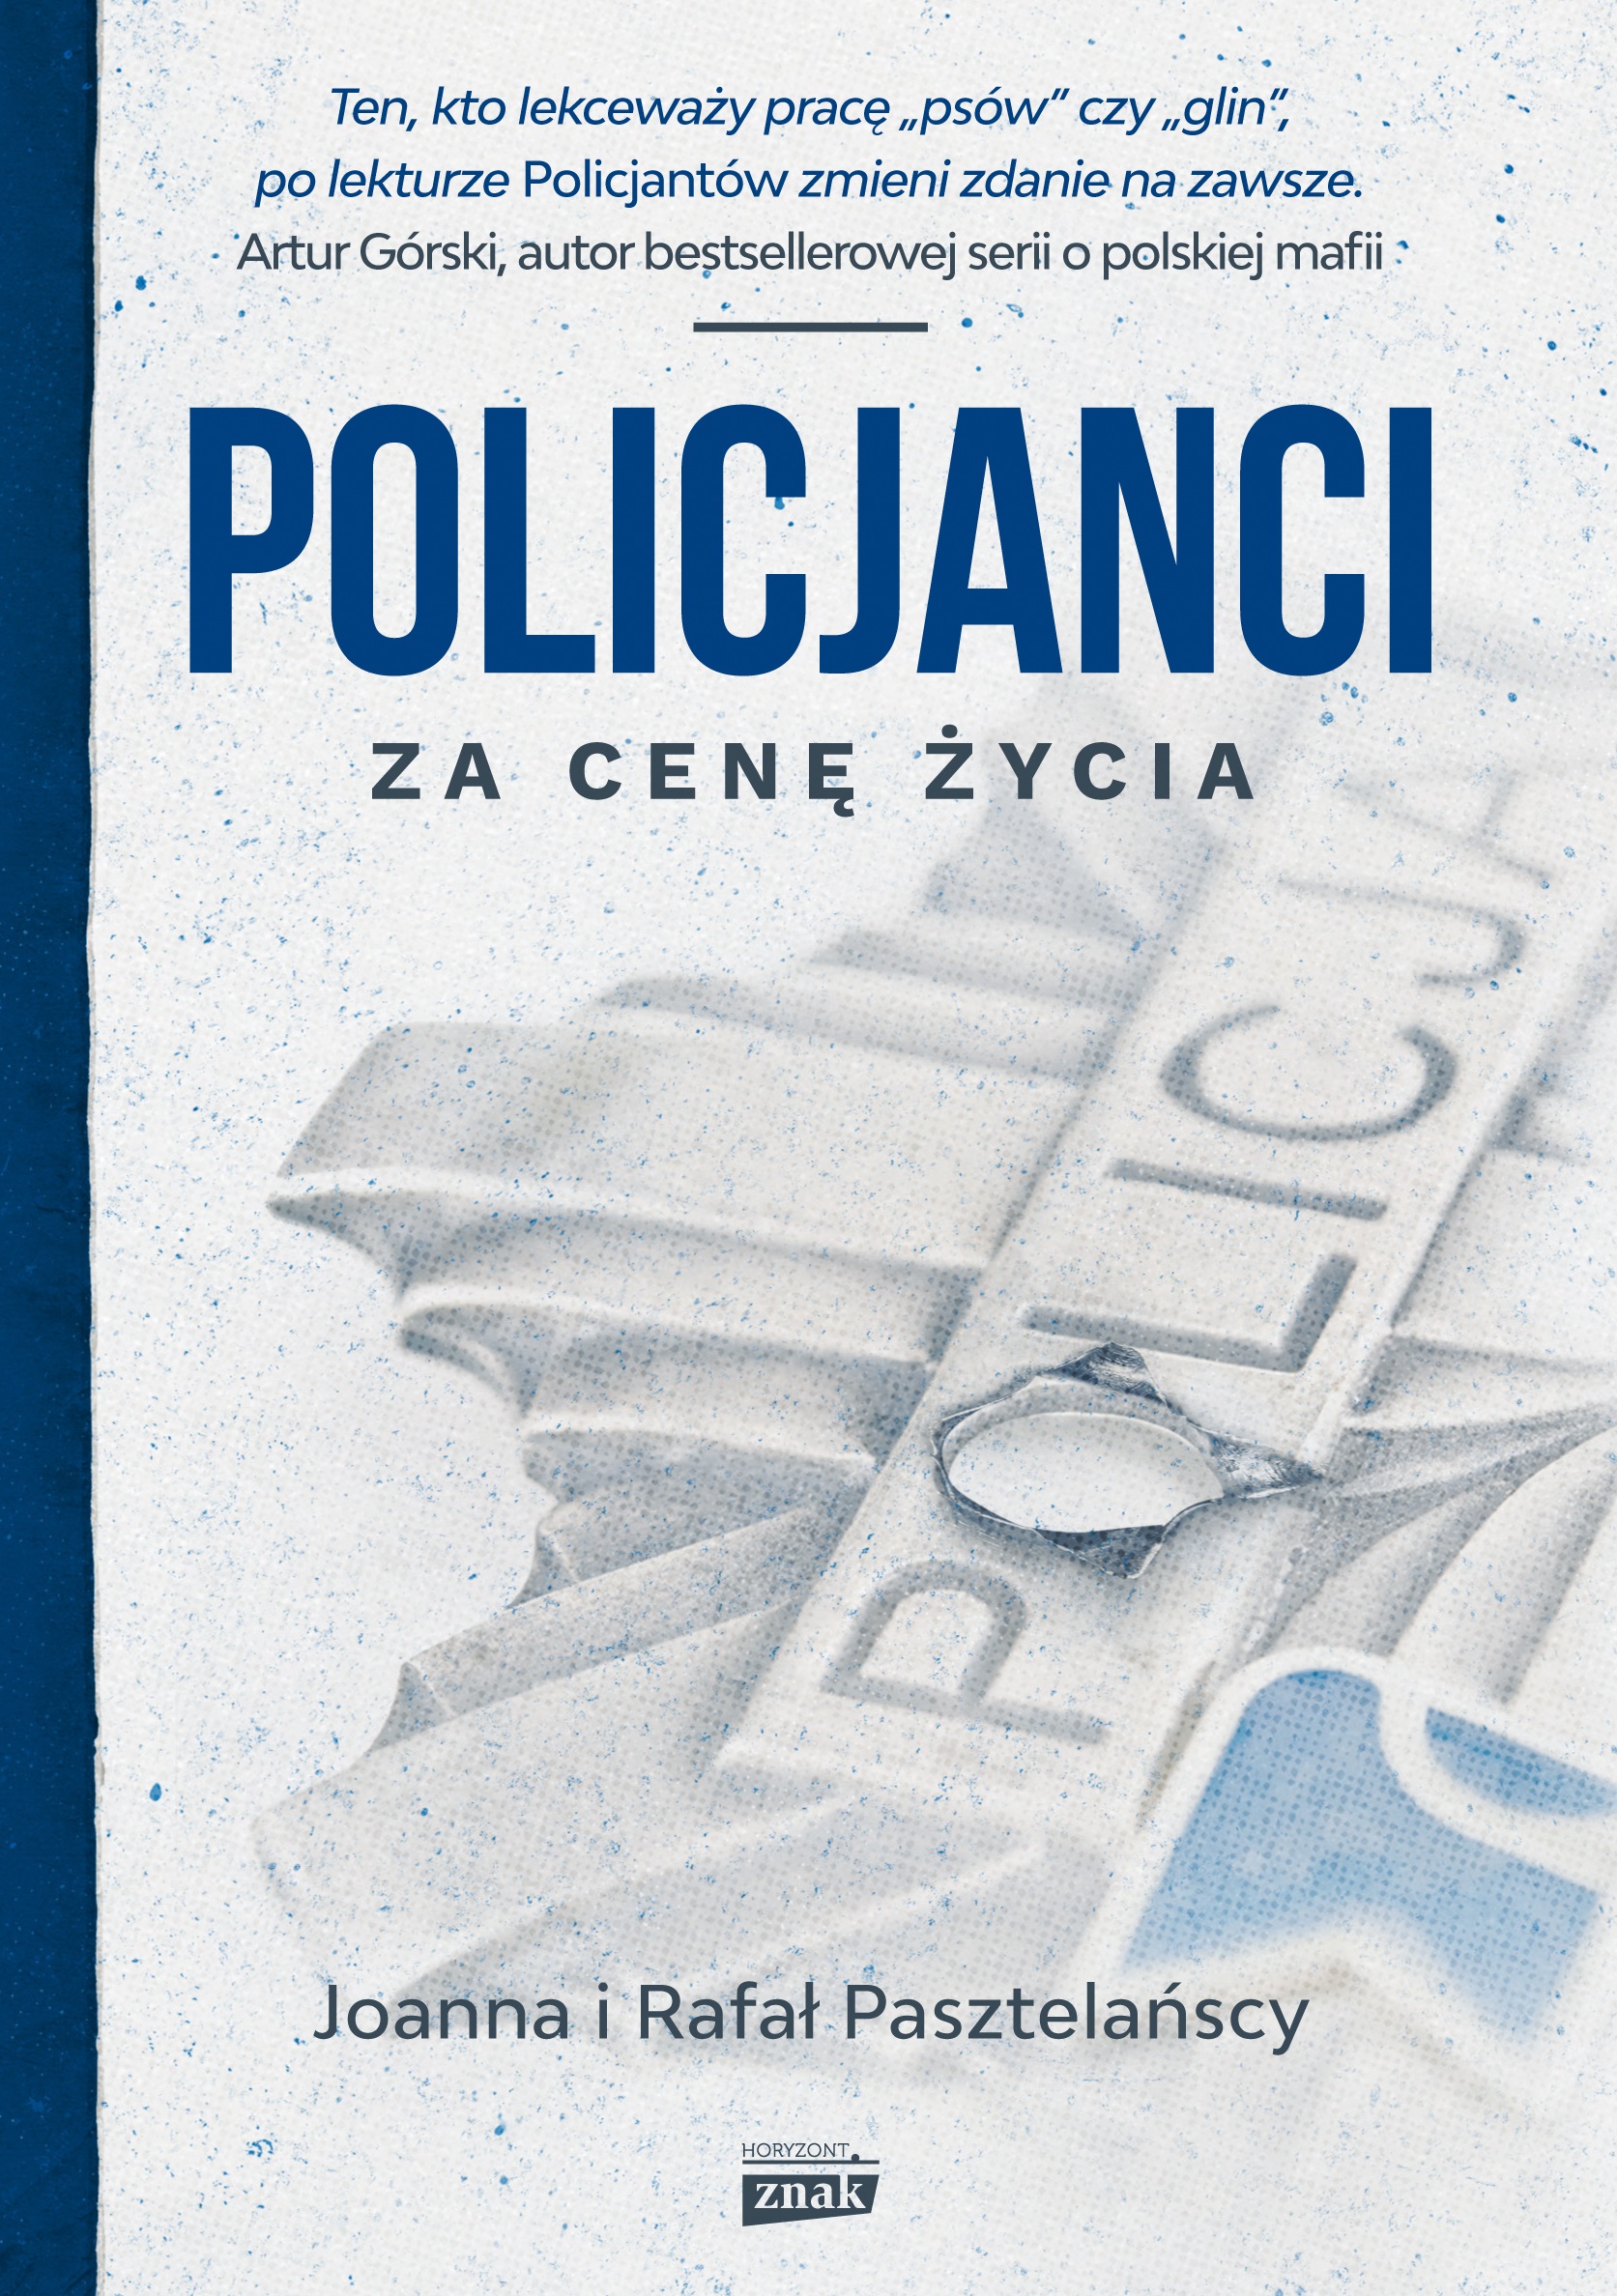 Policjanci. Za cenę życia (Znak Horyzont 2016).